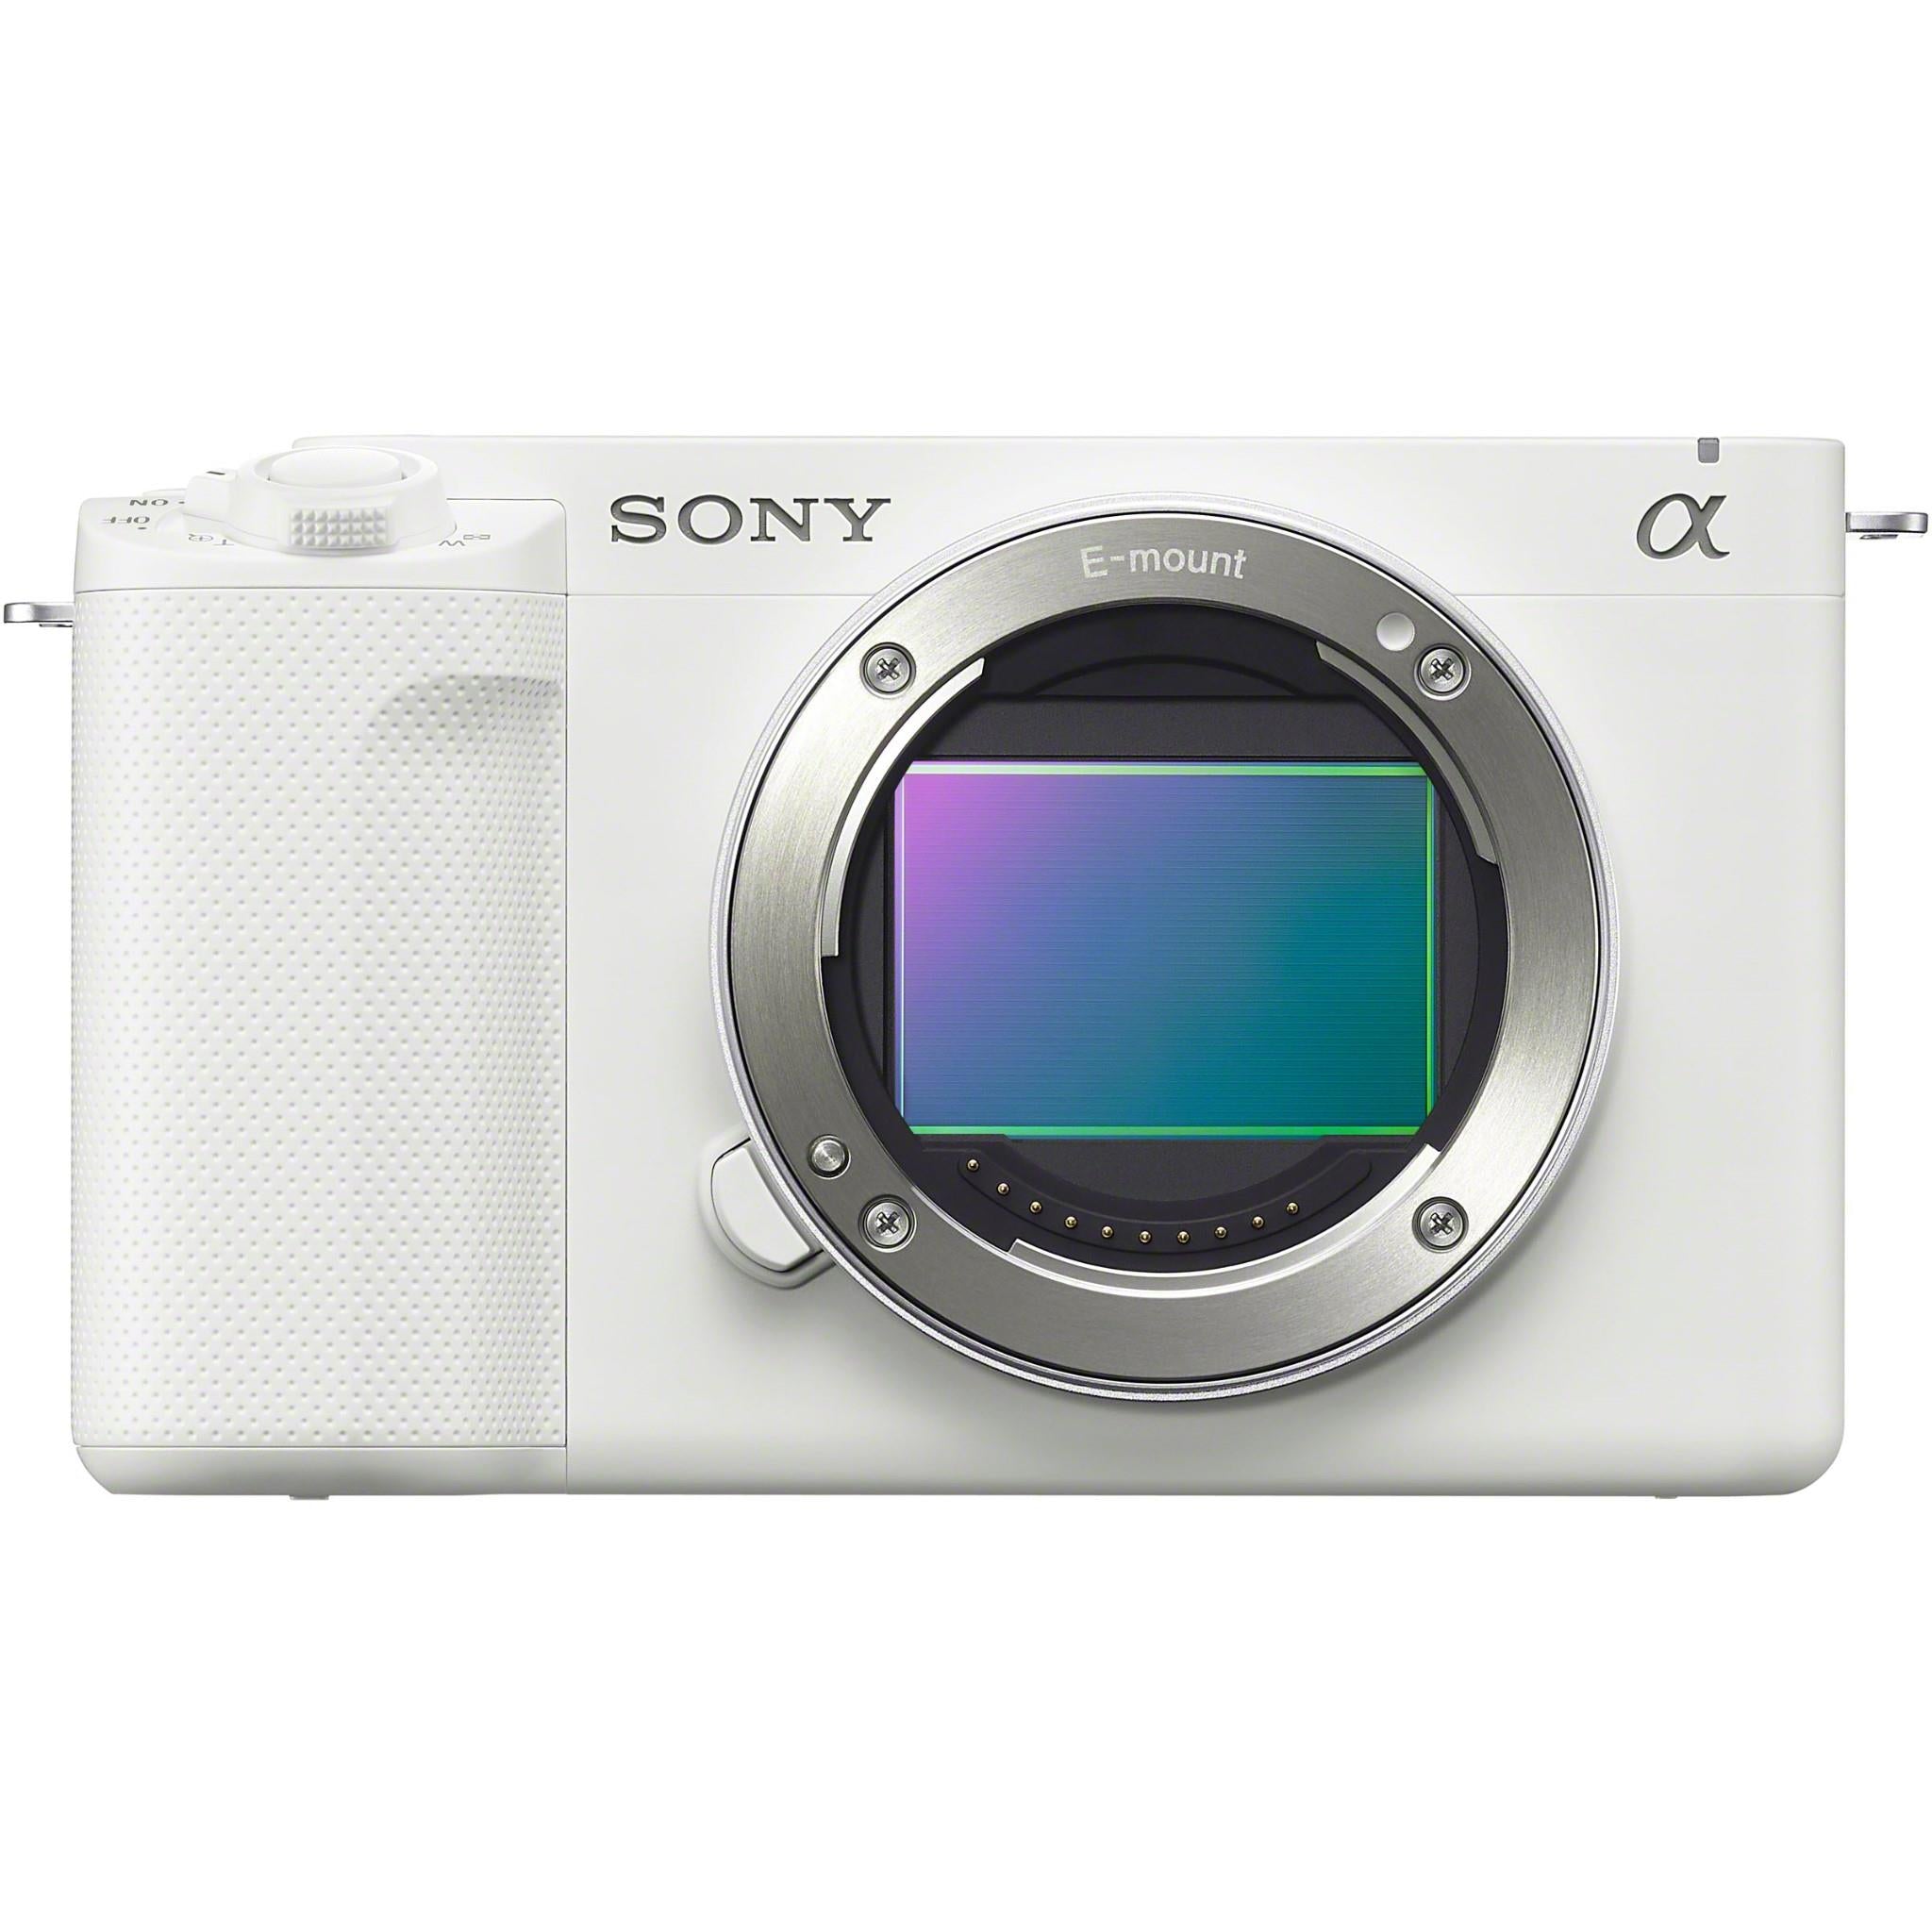 Sony Pro-vlog caméra ZV-E1 - Kamera Express